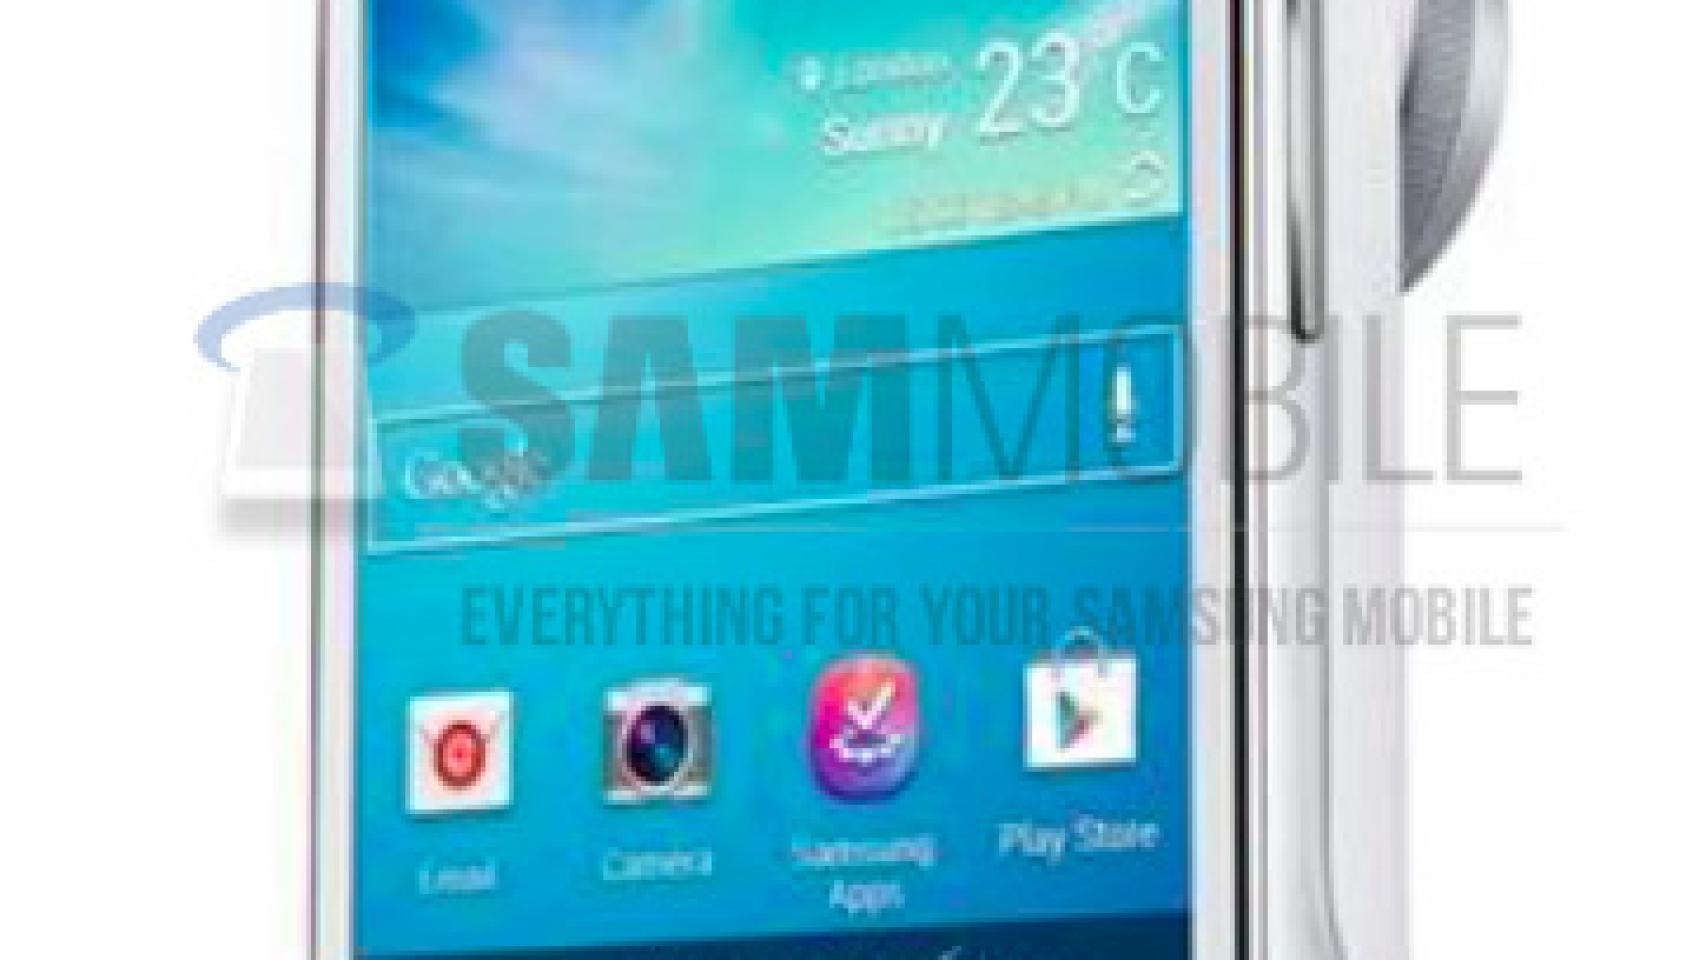 Primeras imágenes de la nueva Smart Cámara Samsung Galaxy S4 Zoom